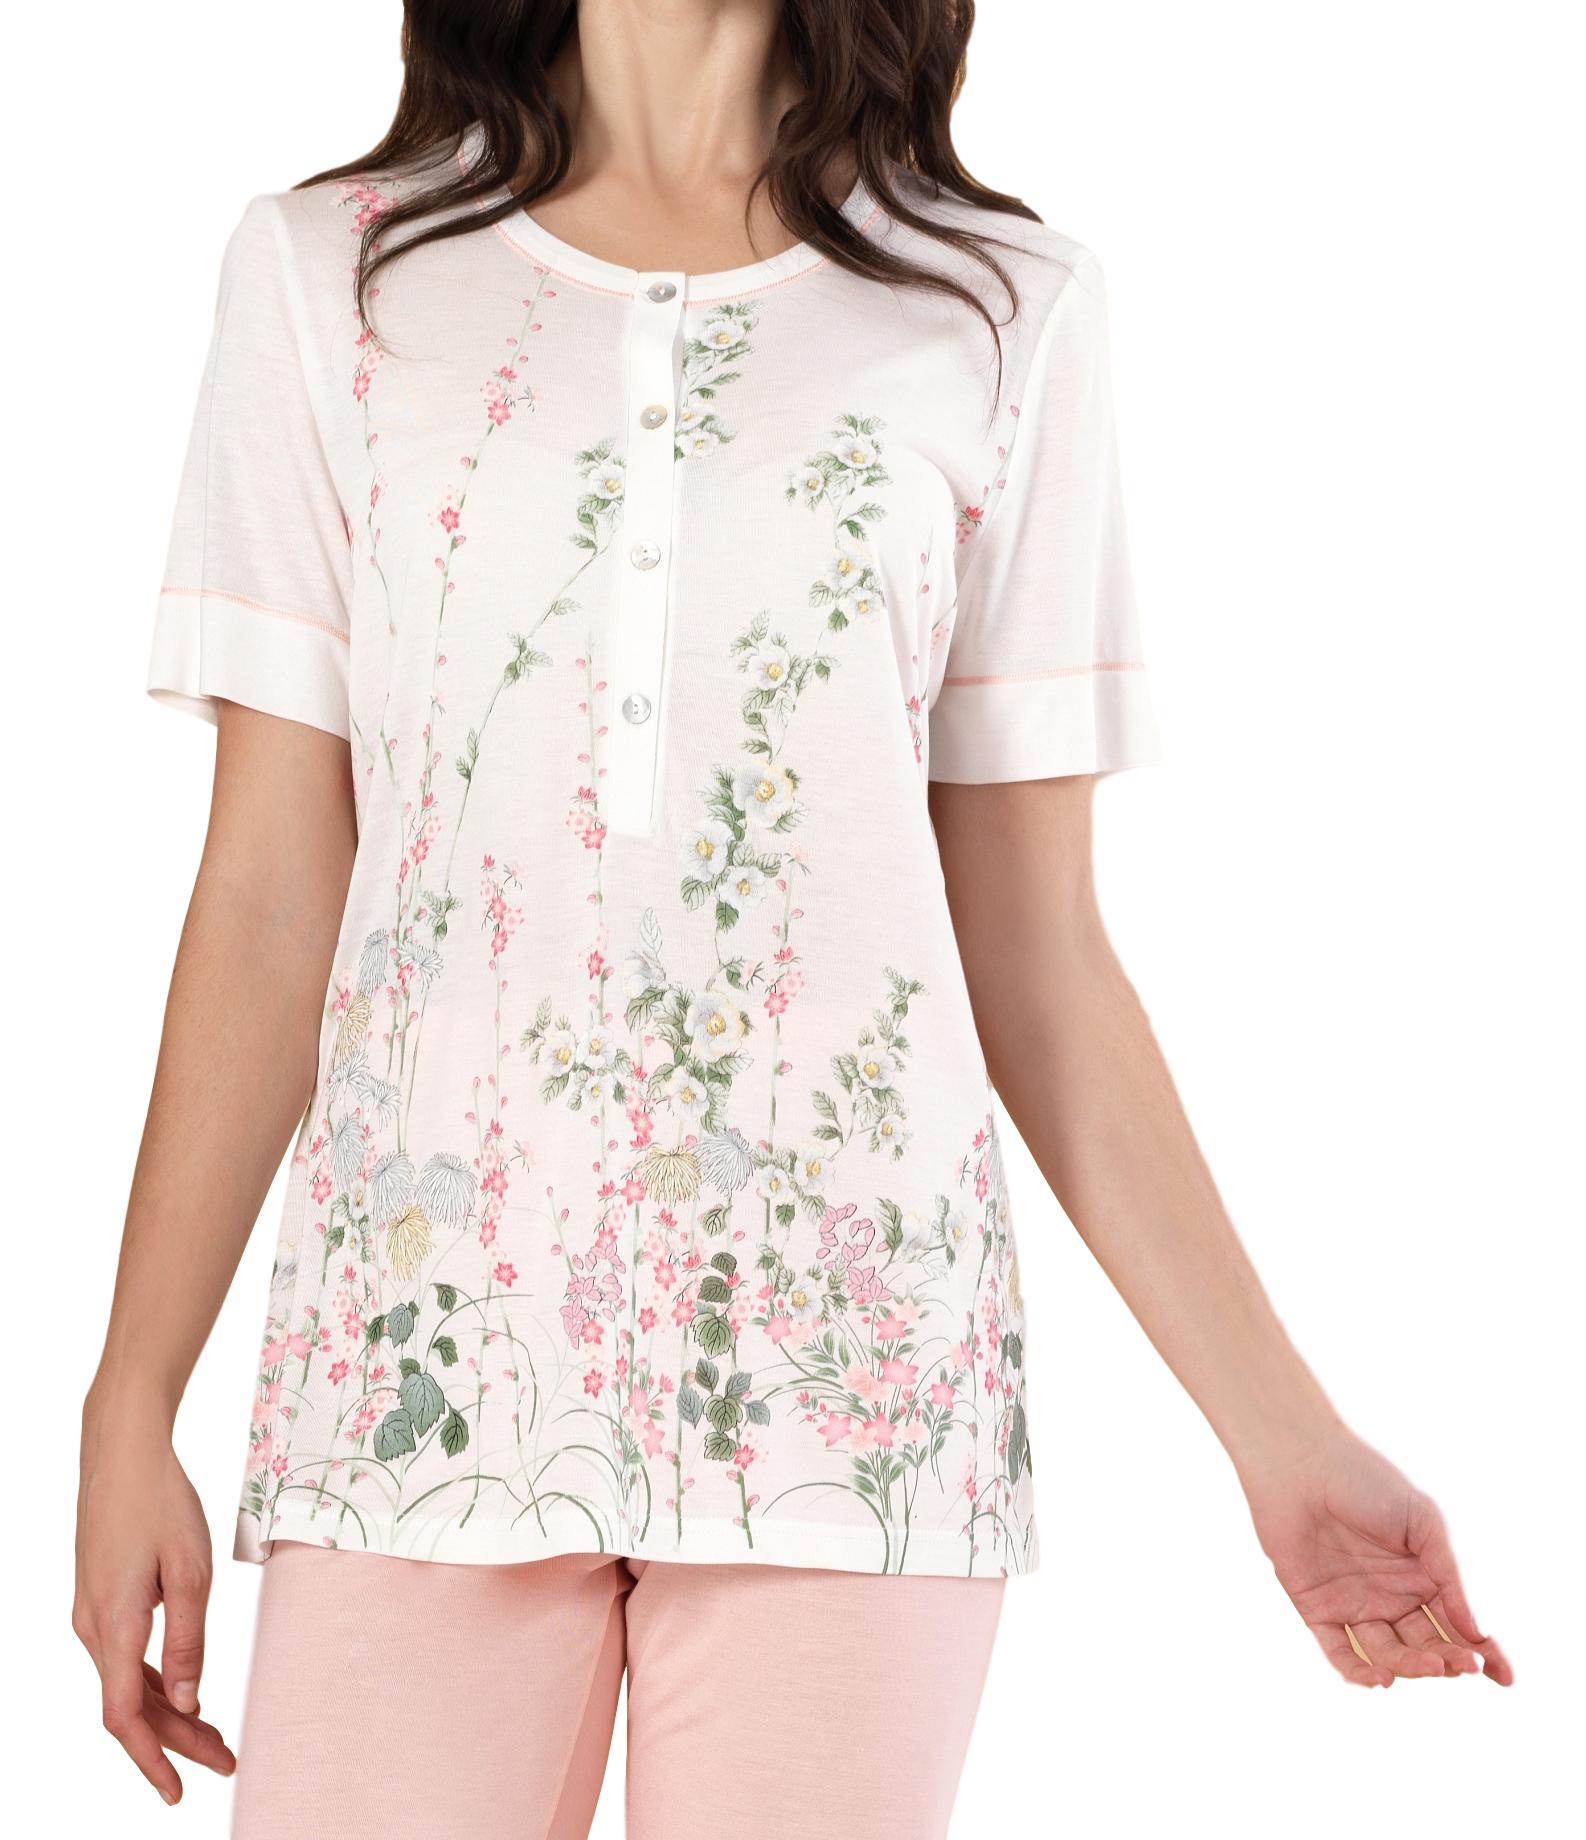 Linclalor Pyjamas 100% Modal Floral Print Pyjamas - Peach or Green - 10 to 20